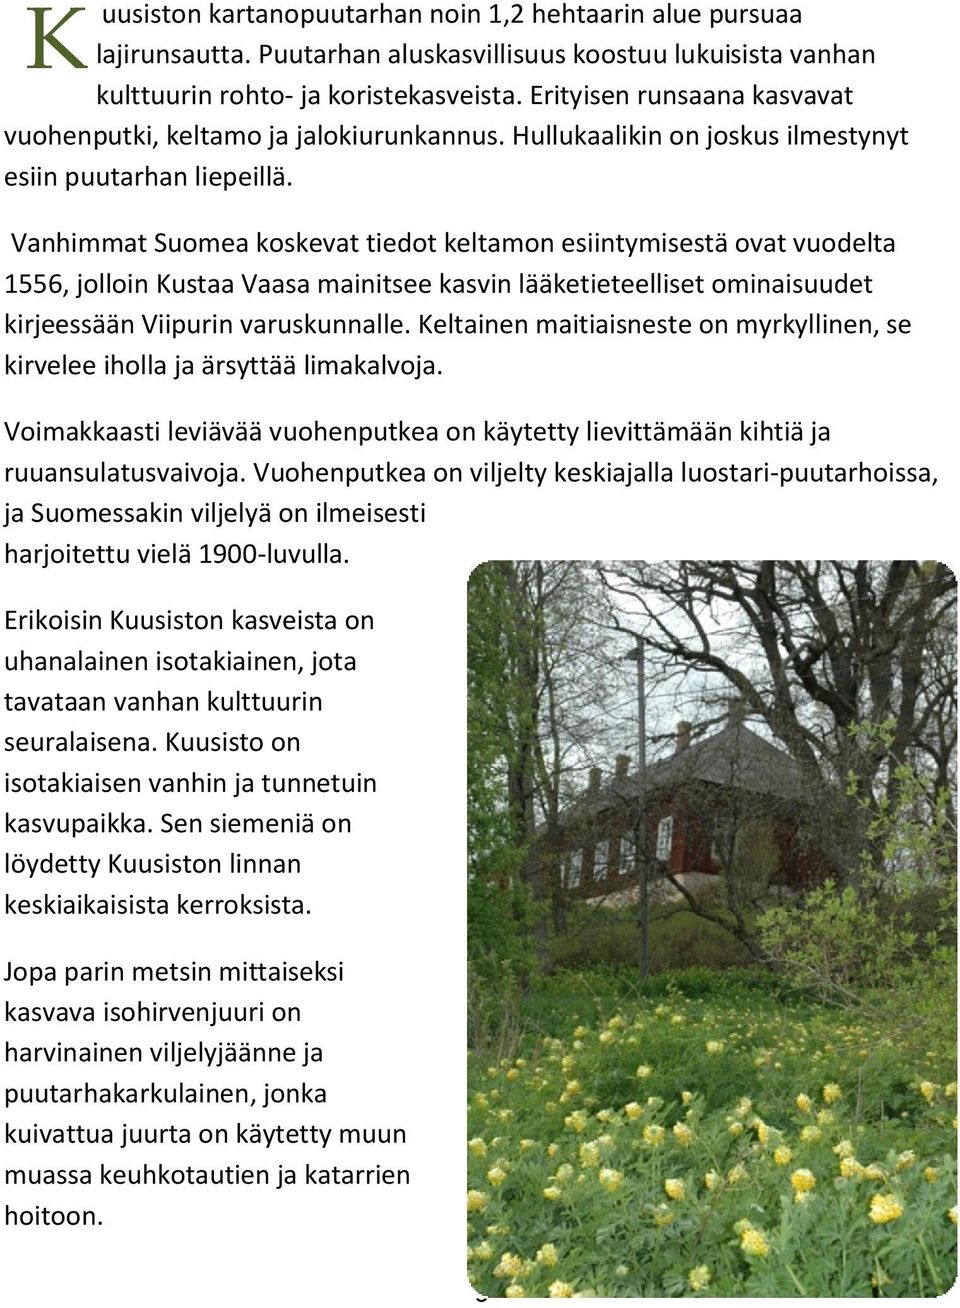 Vanhimmat Suomea koskevat tiedot keltamon esiintymisestä ovat vuodelta 1556, jolloin Kustaa Vaasa mainitsee kasvin lääketieteelliset ominaisuudet kirjeessään Viipurin varuskunnalle.